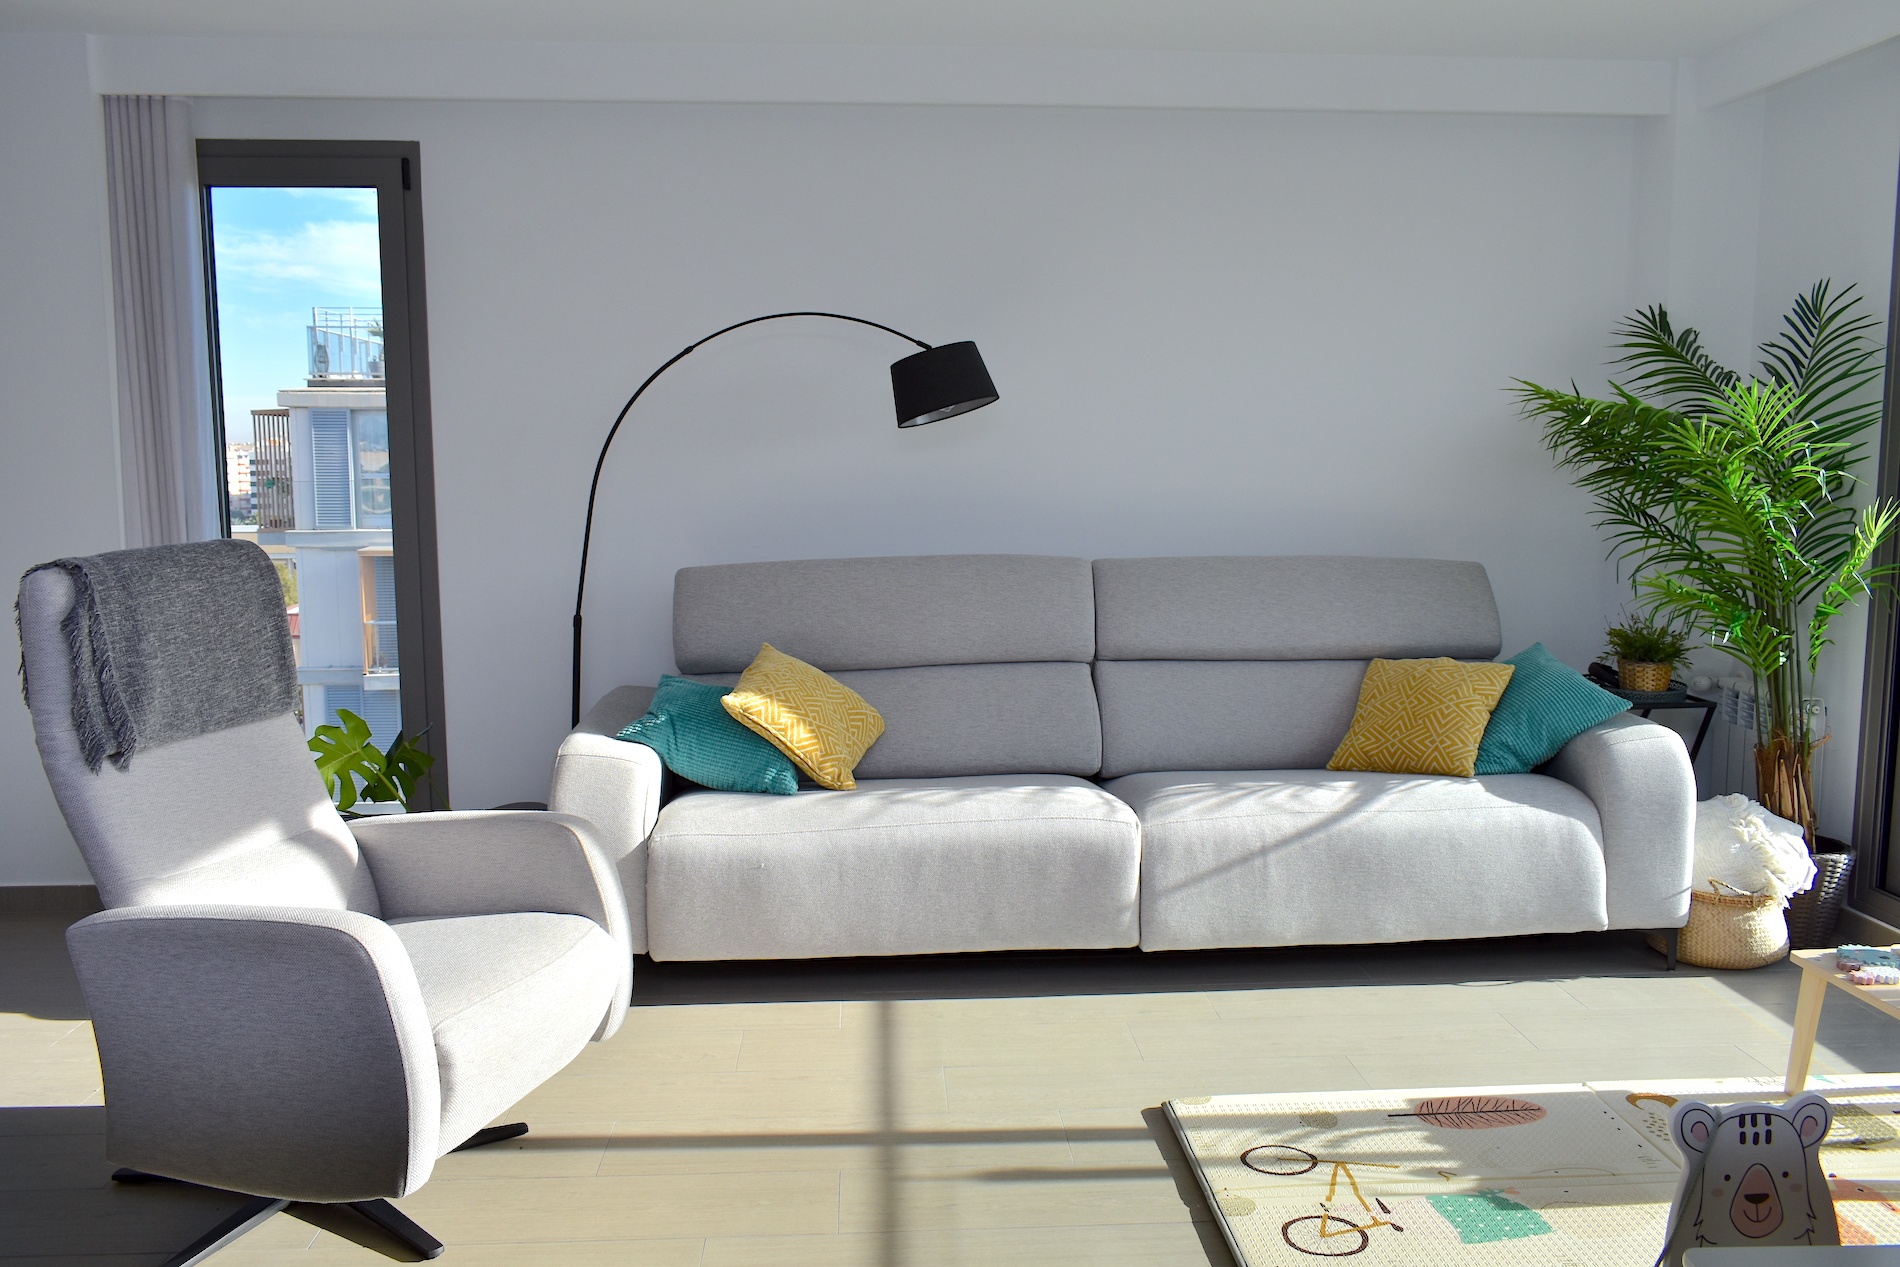 Niesamowite nowoczesne mieszkanie z zapierającymi dech w piersiach widokami w Walencji